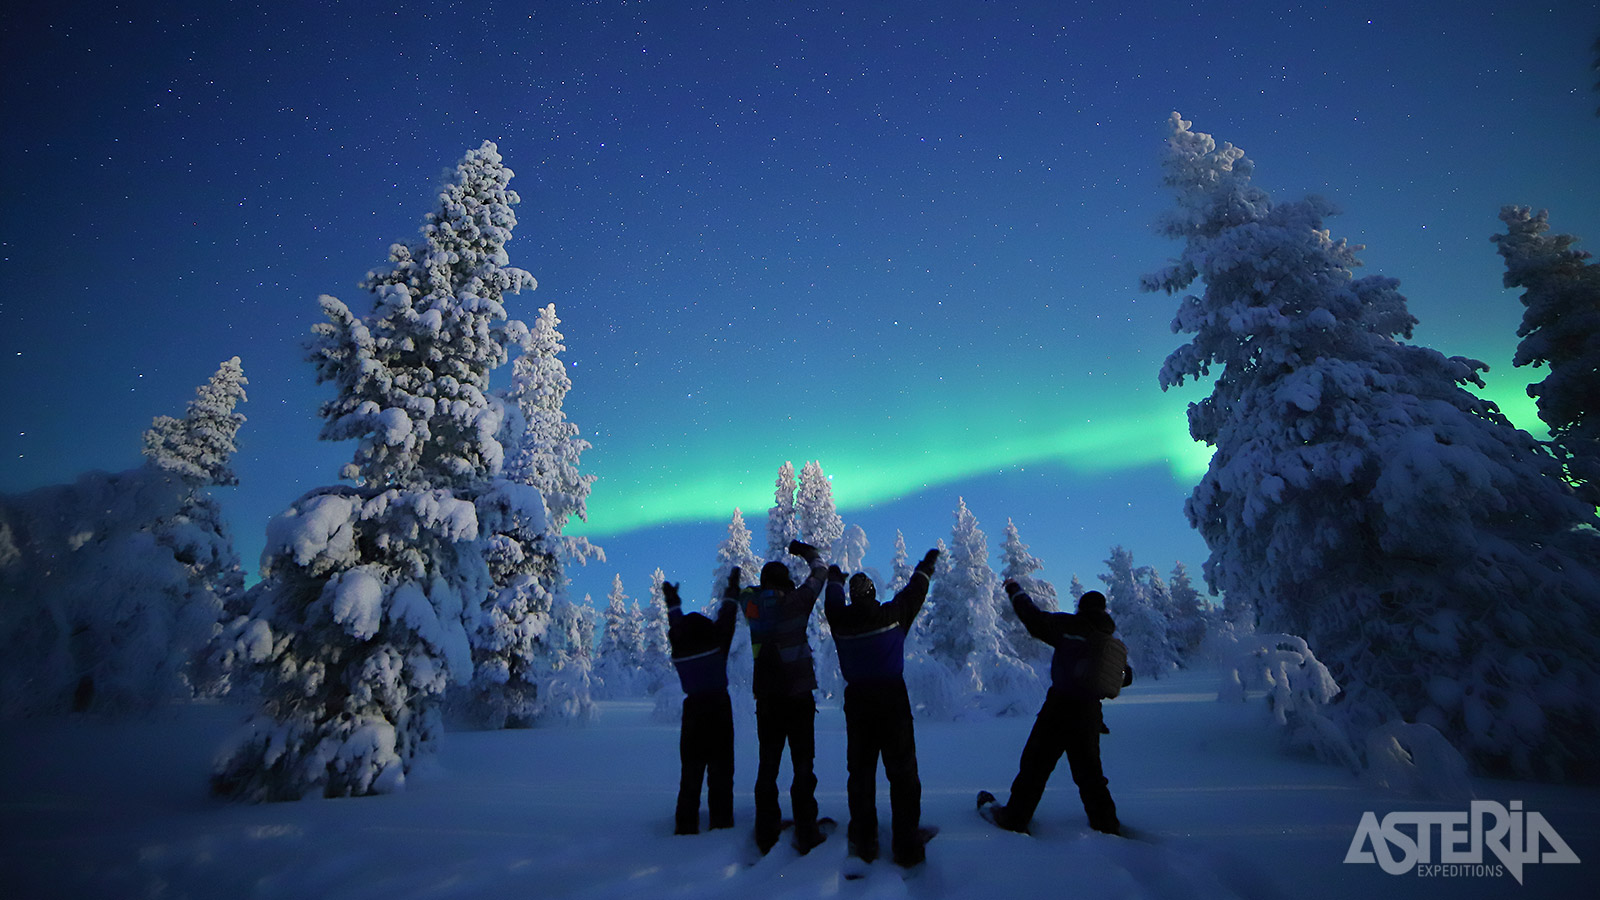 Het Romantic Aurora Escape excursiepakket omvat o.a. een nachtelijke sneeuwschoenwandeling